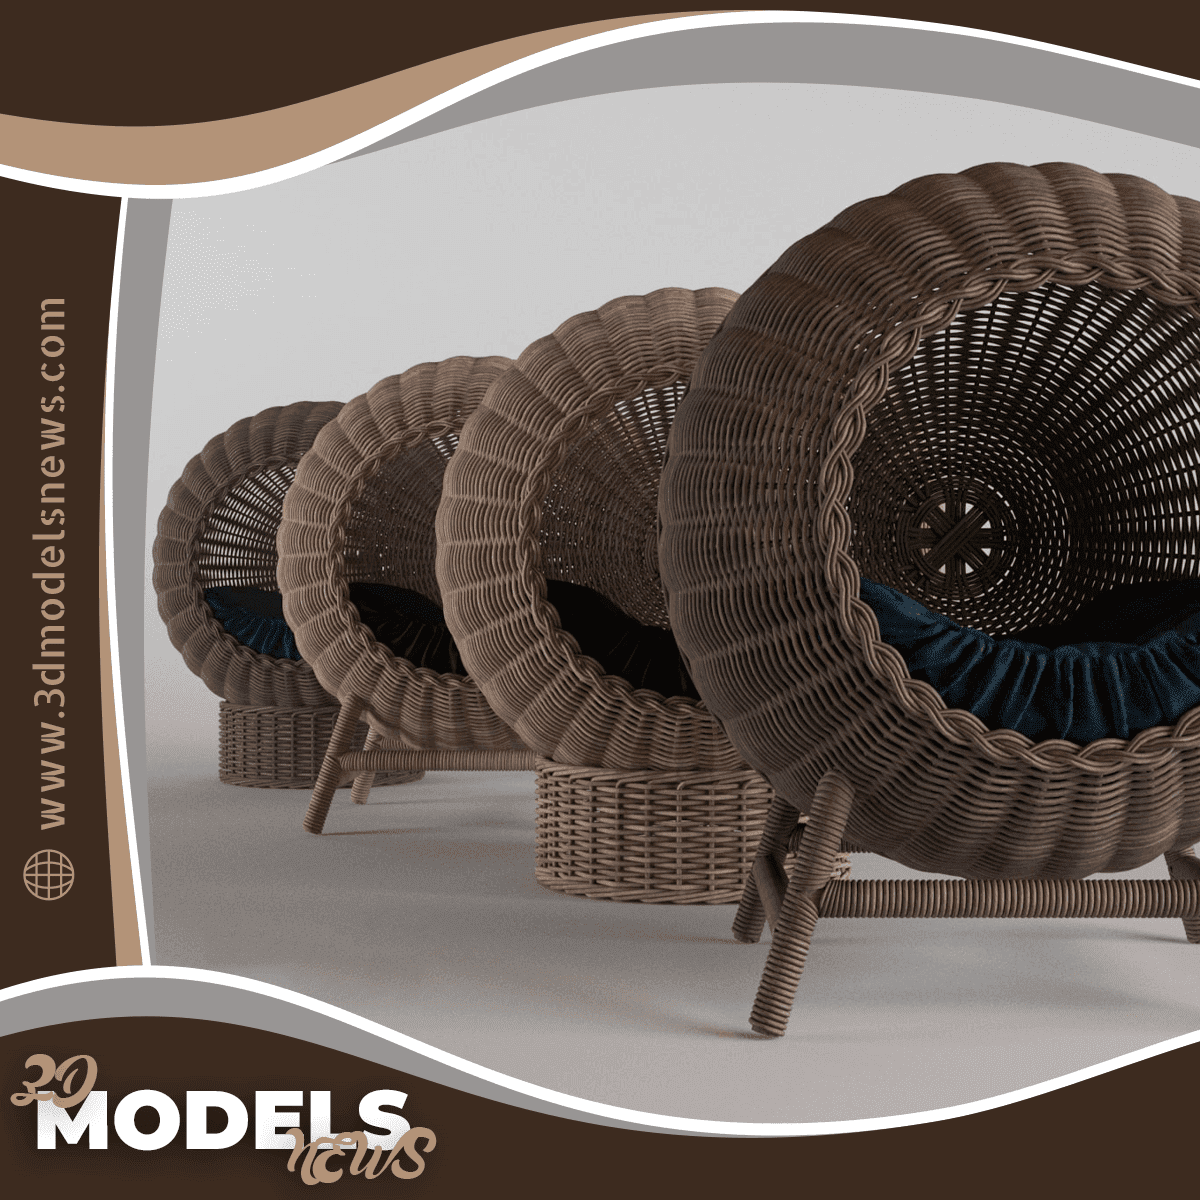 Wicker baskets model for pets